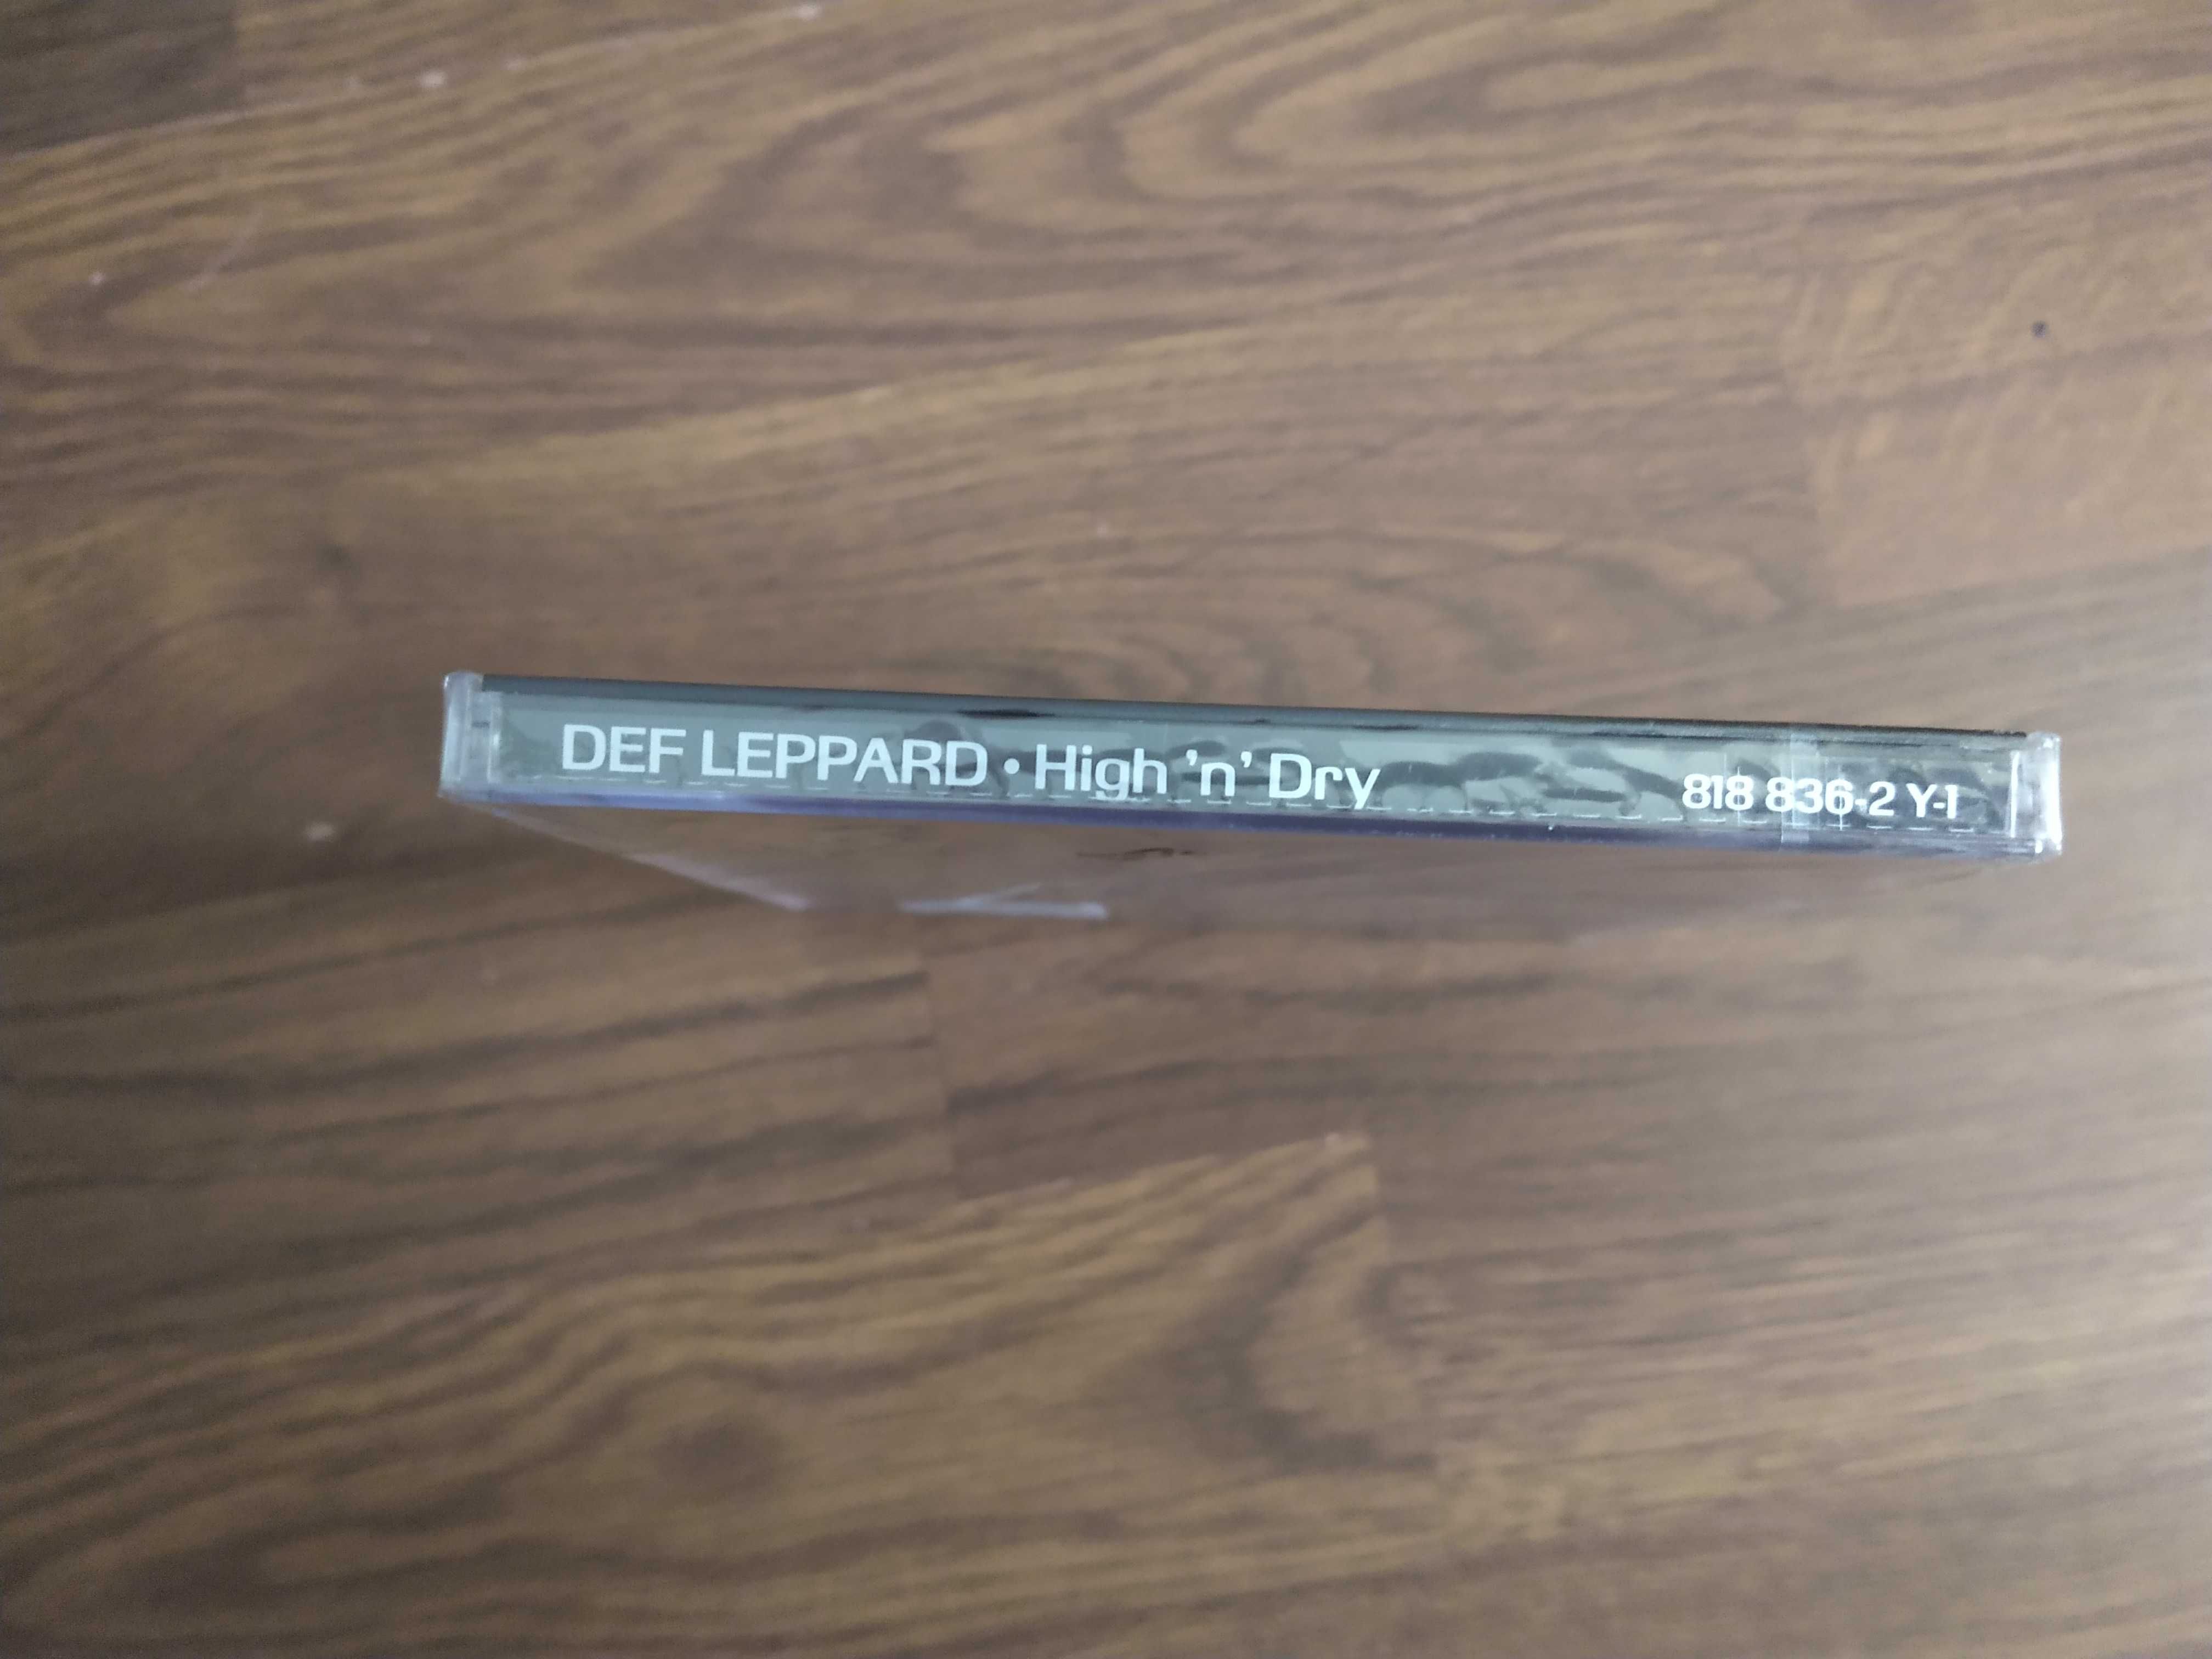 Def Leppard - "High 'n' Dry" - CD nowy, folia